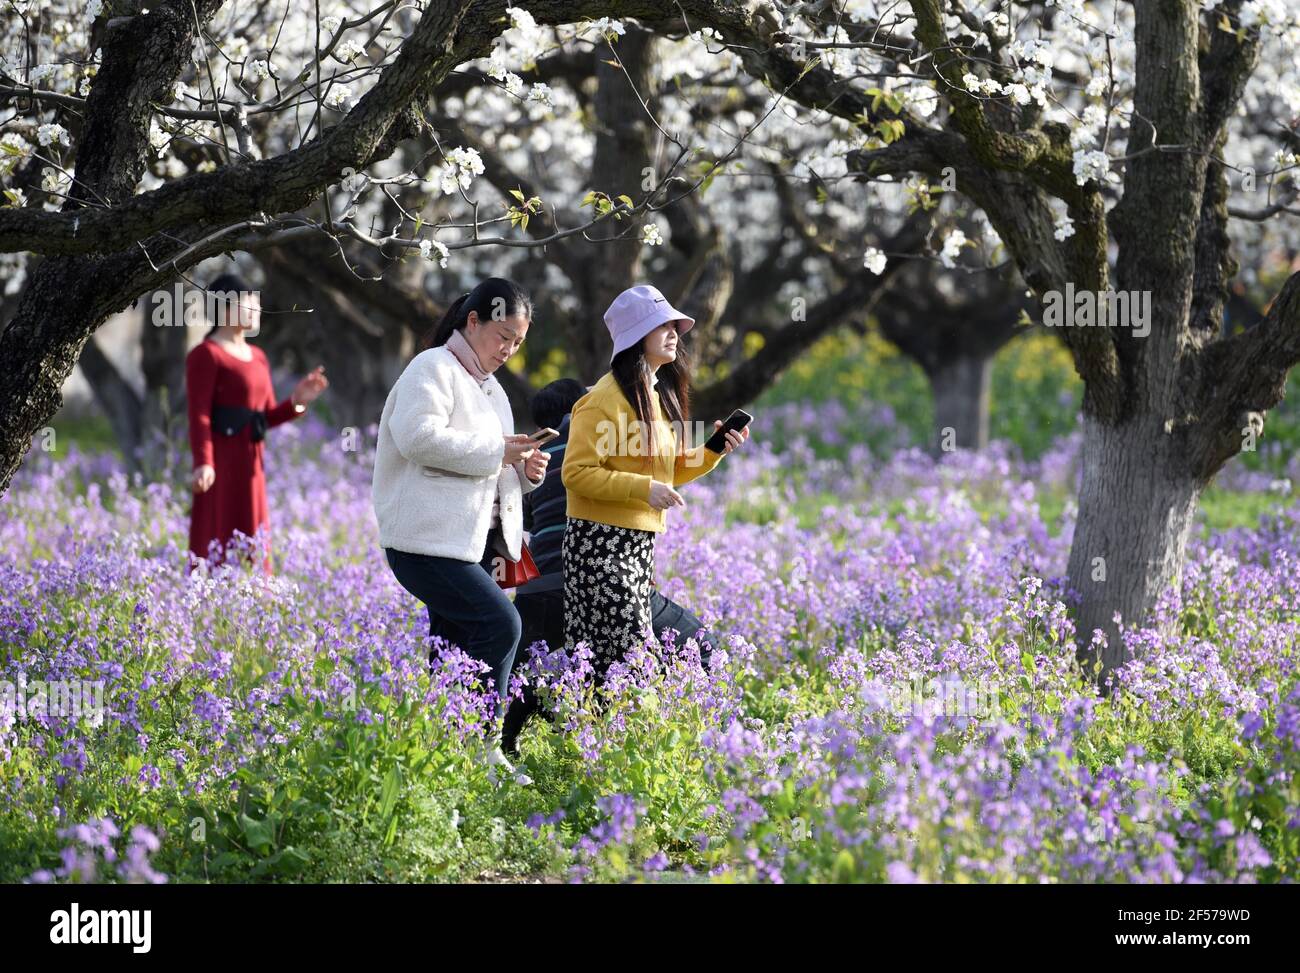 HUAI'AN, CHINA - 24. MÄRZ 2021 - Touristen sehen Birne, Raps und Februar Orchideen Blumen in Huai 'an Stadt, Ost-China Jiangsu Provinz, 24. März 2021. (Foto von He Jinghua / Costfoto/Sipa USA) Quelle: SIPA USA/Alamy Live News Stockfoto